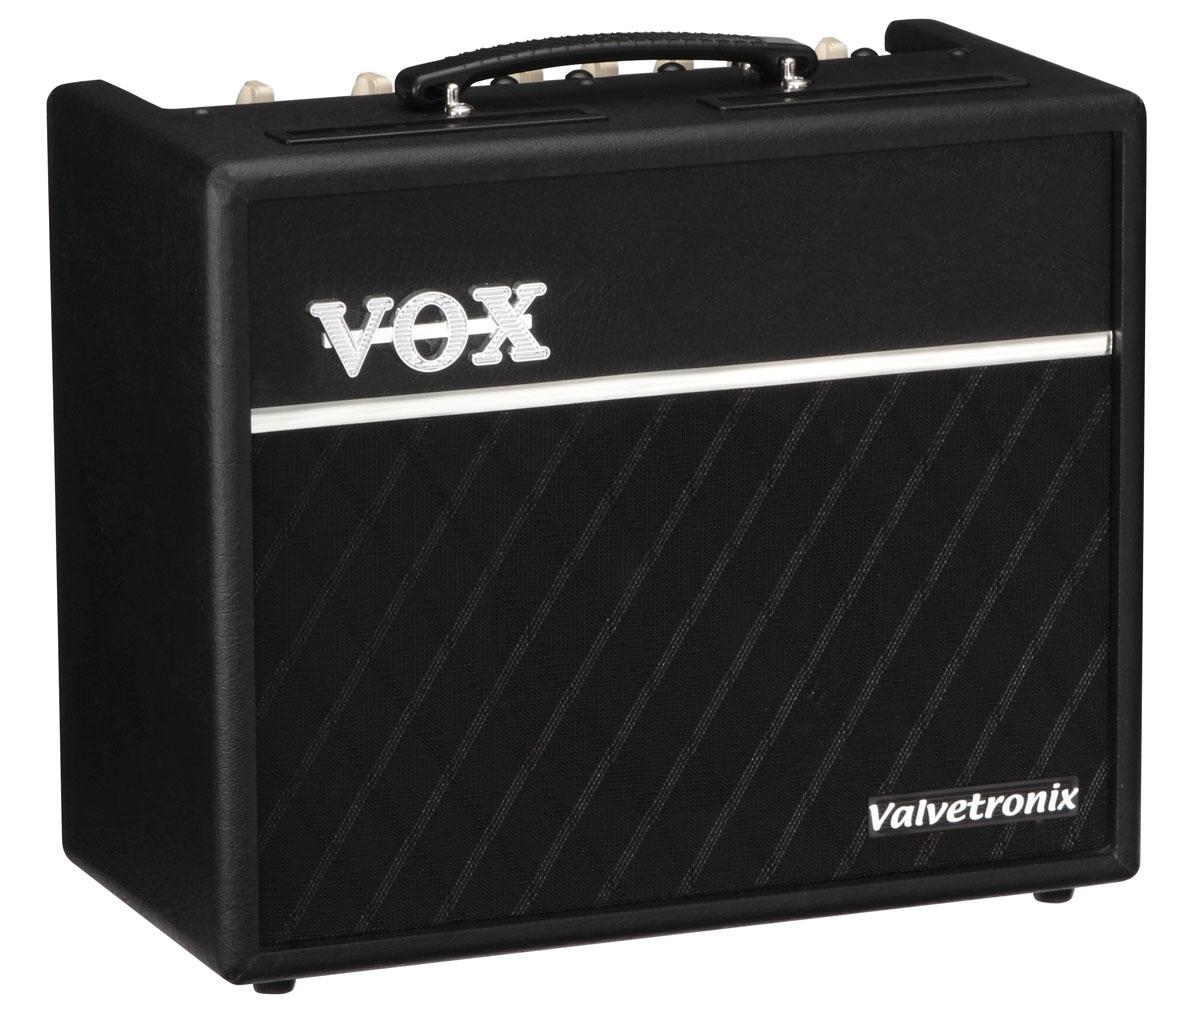 Foto Vox Vt20+ Amplificador Guitarra foto 179031